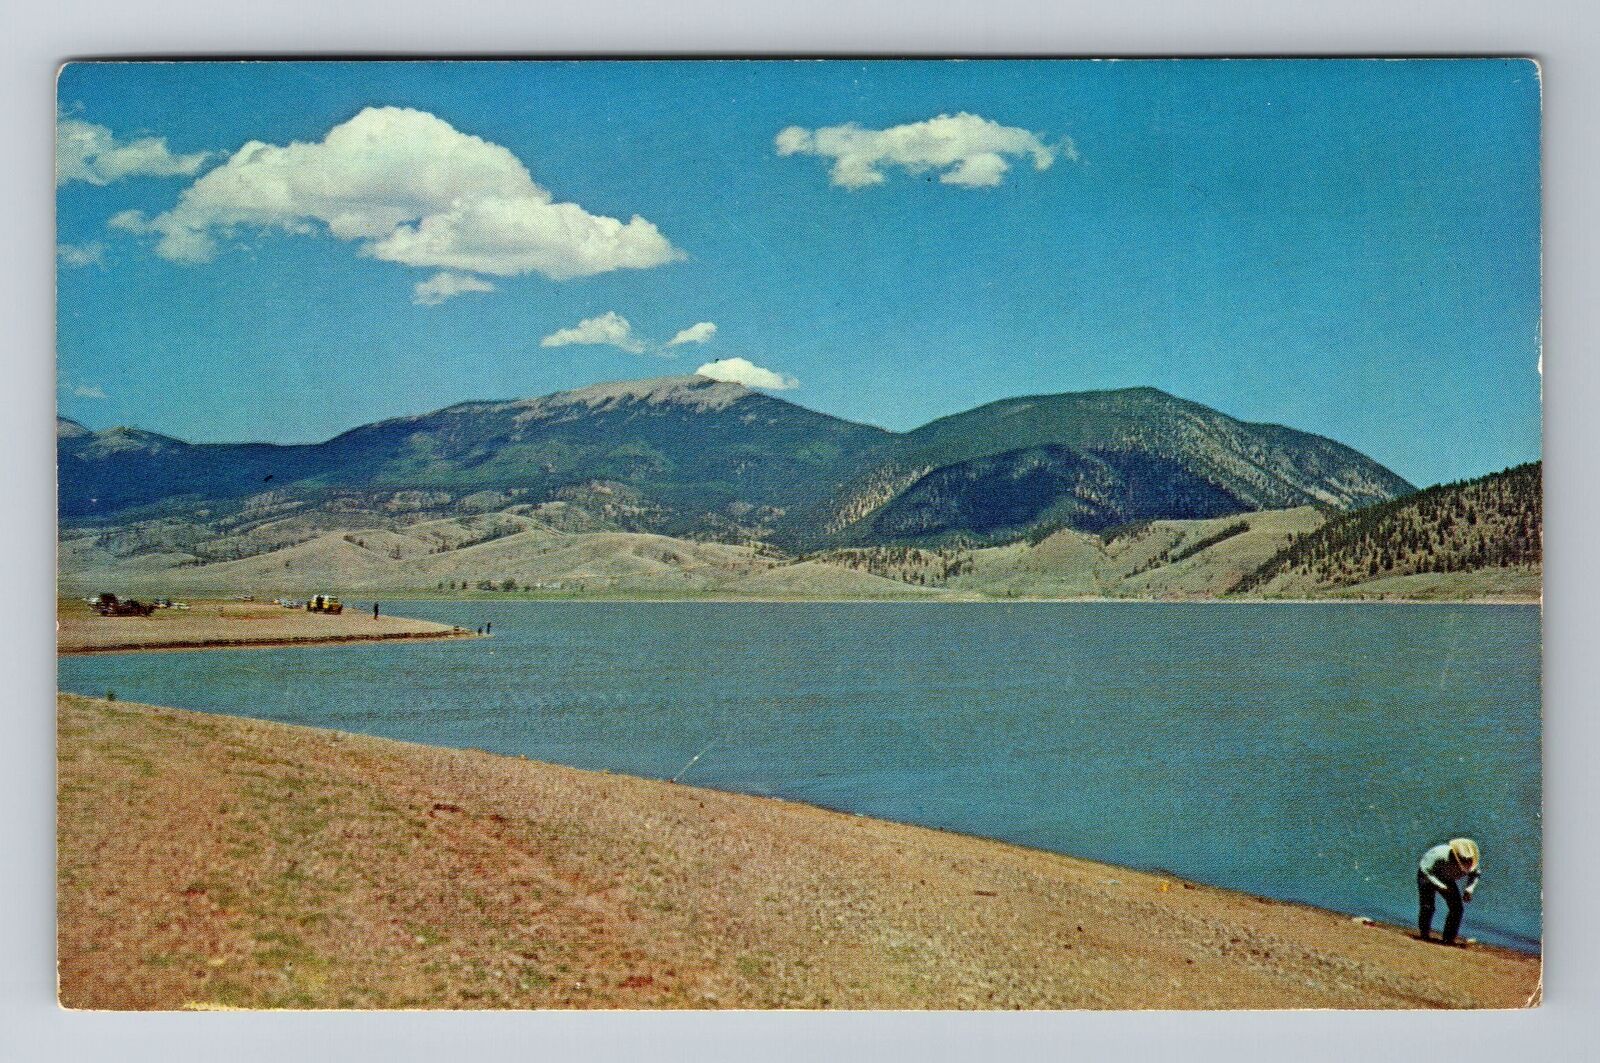 Eagle Nest NM-New Mexico, Eagle Nest Lake, c1968 Antique Vintage Postcard